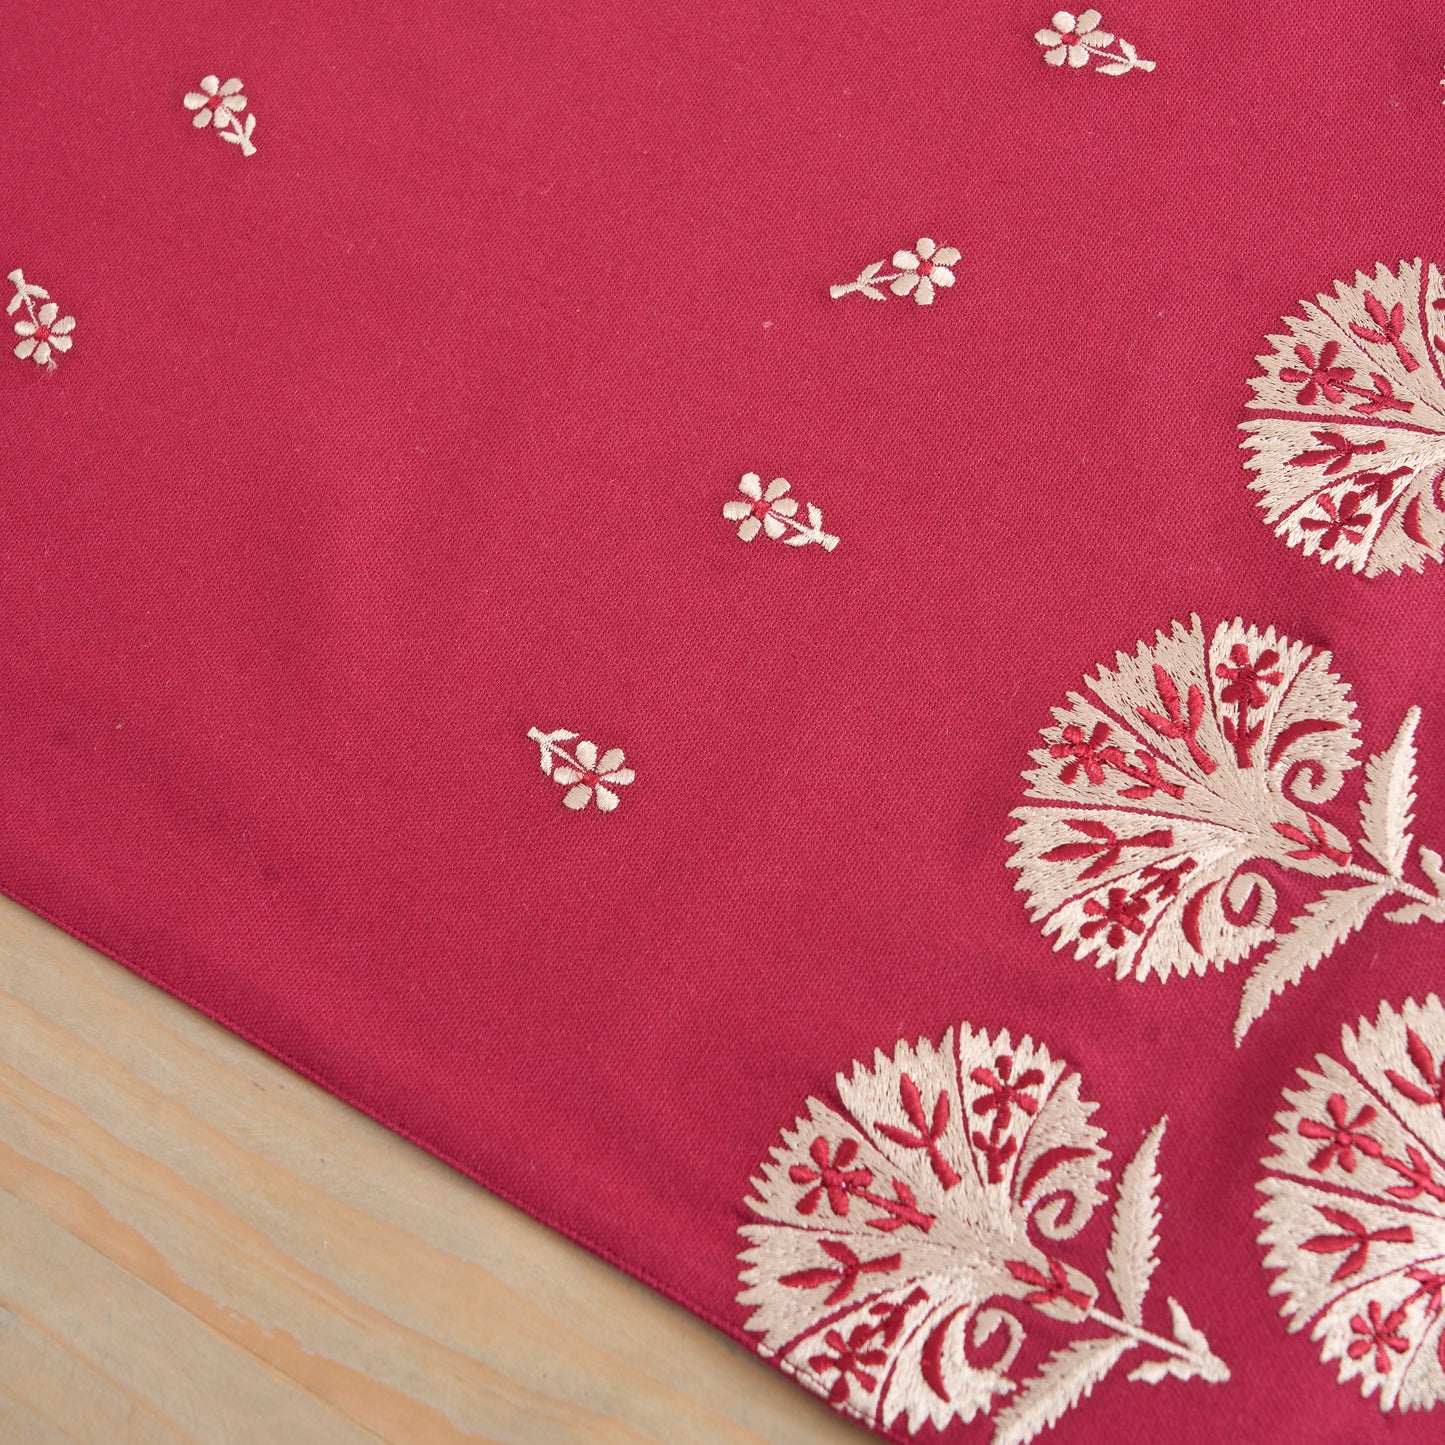 KASHIDAKAARI - Maroon Table runner, embroidered floral suzani pattern